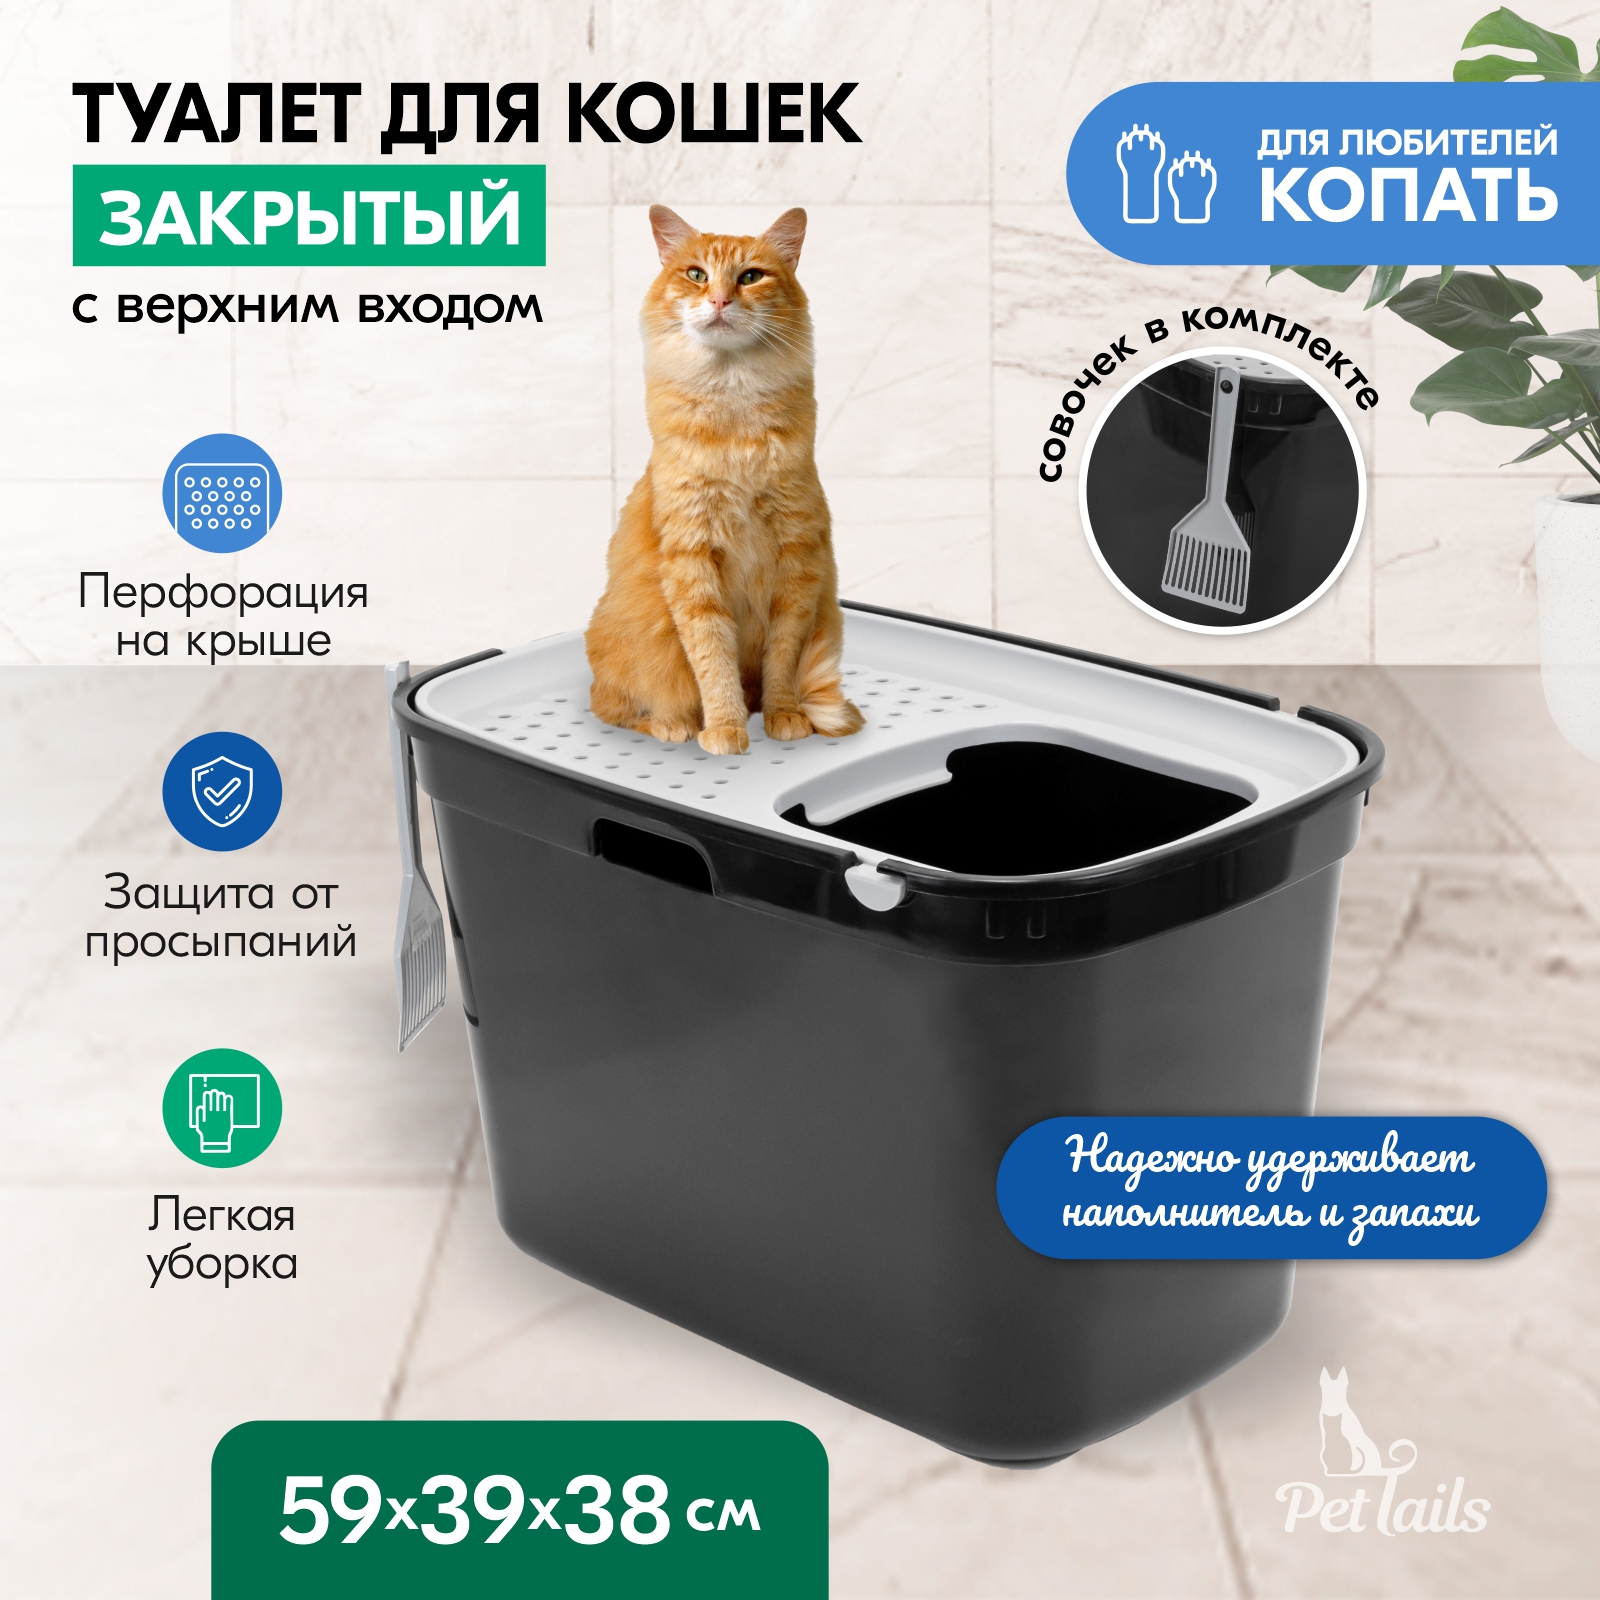 Туалет для кошек PetTails закрытый, с верхним входом, черный, полипропилен, 59x39x38 см